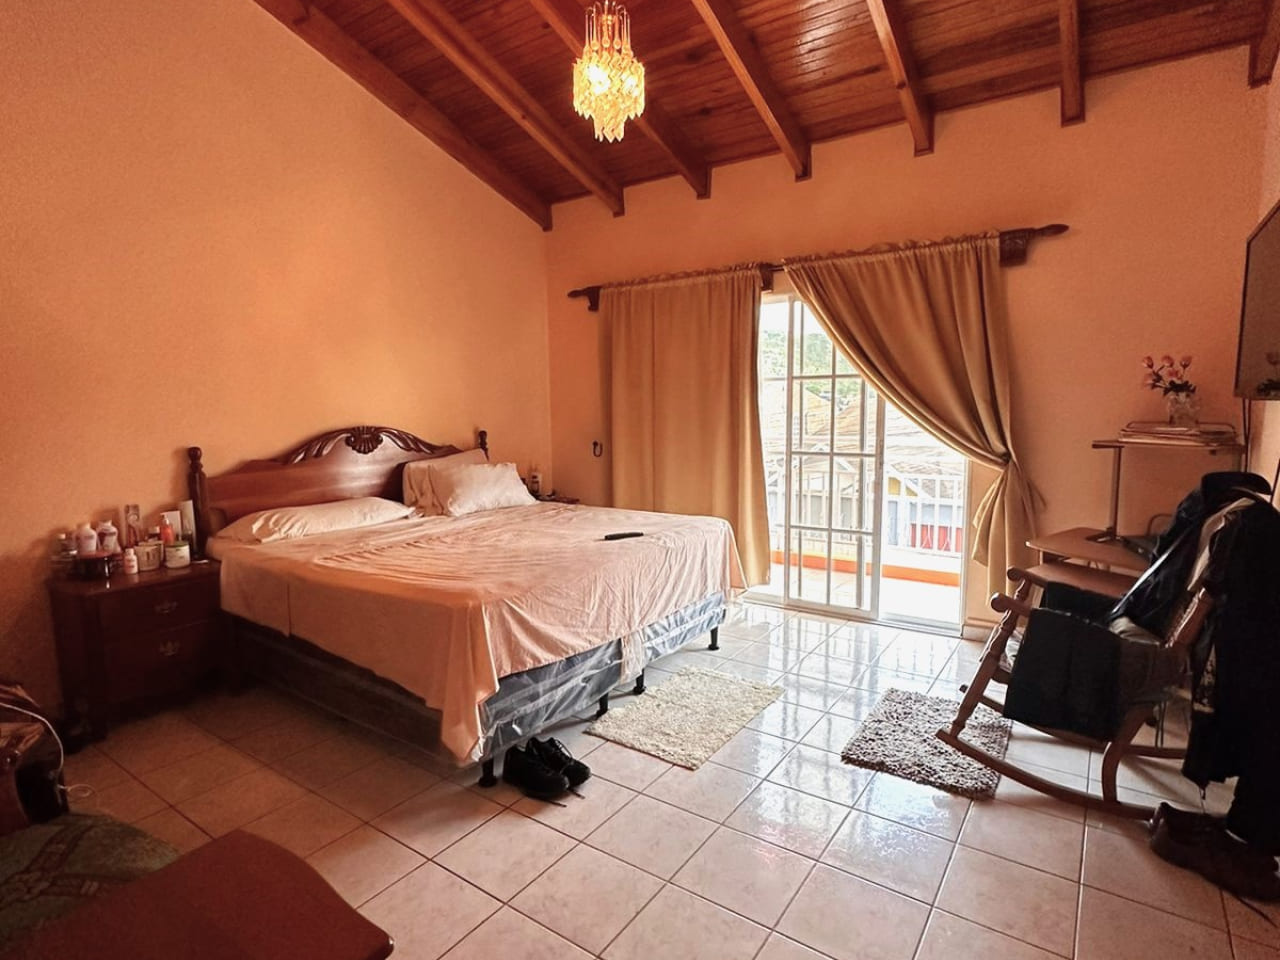 Área de dormitorio con paredes de color carmin, techo de madera, sujujelo de ceramica de color blanco, cama matrimonia, una puerta deslizable que brinda acceso al balcón.